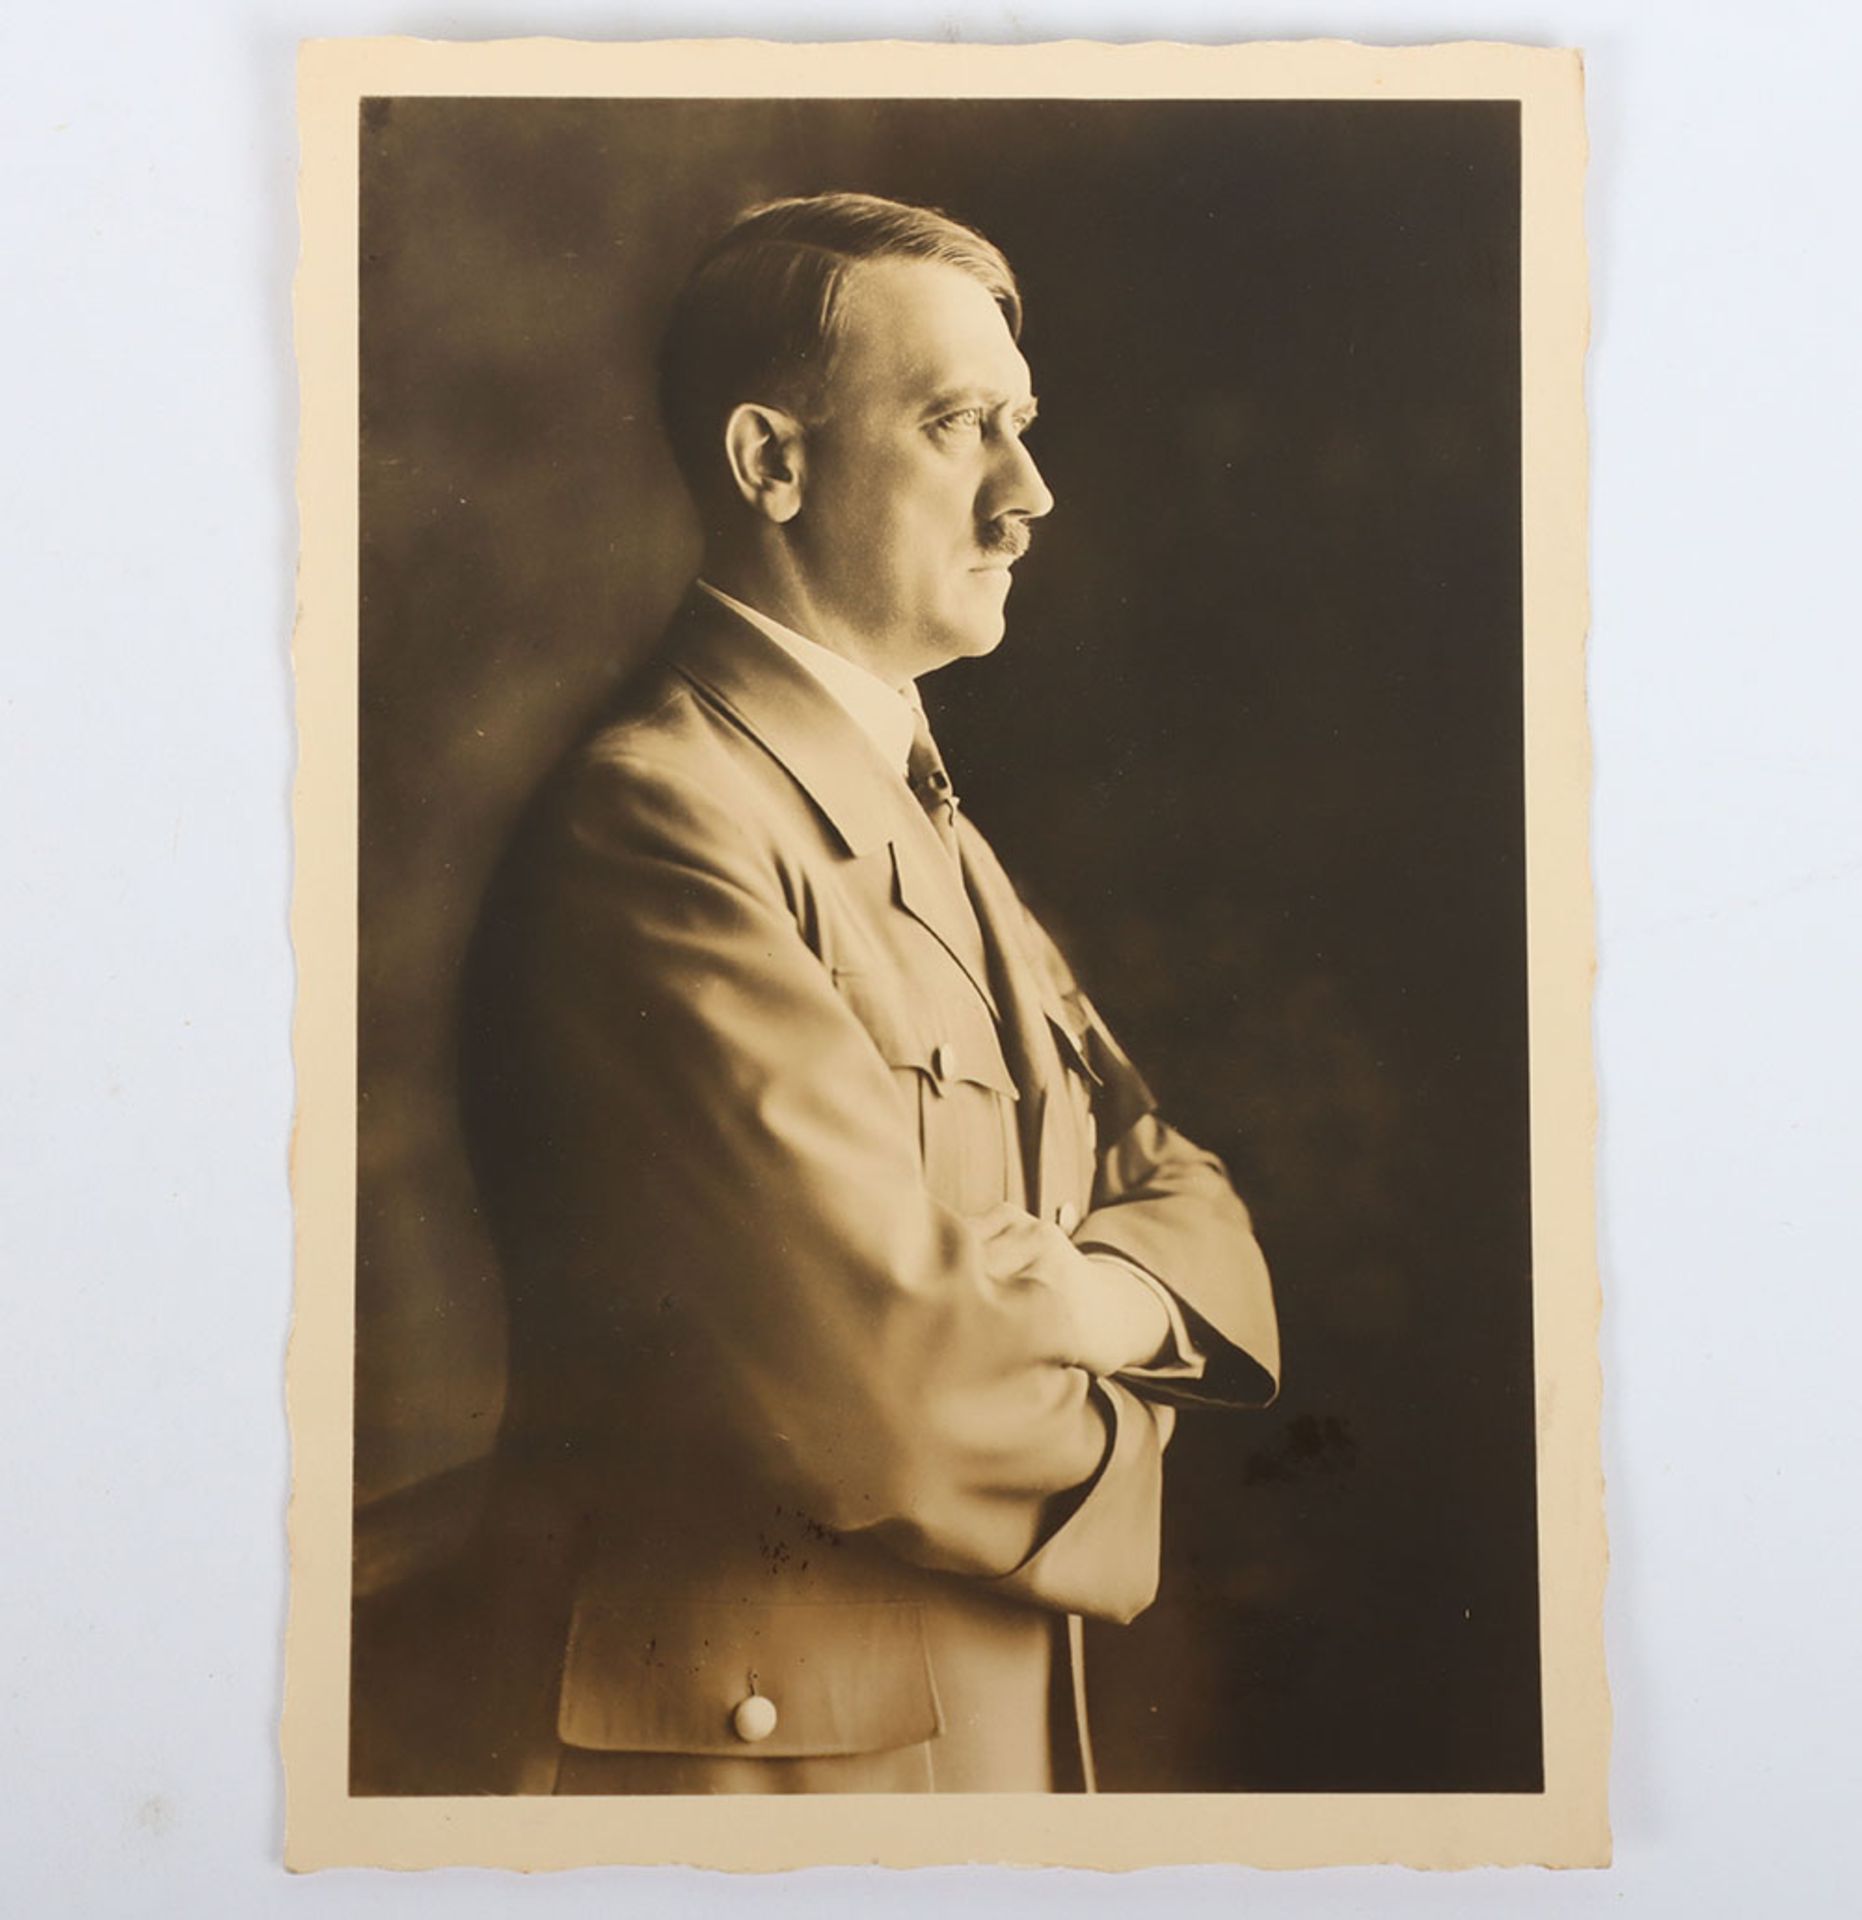 German Third Reich Adolf Hitler Postcard - Image 2 of 4